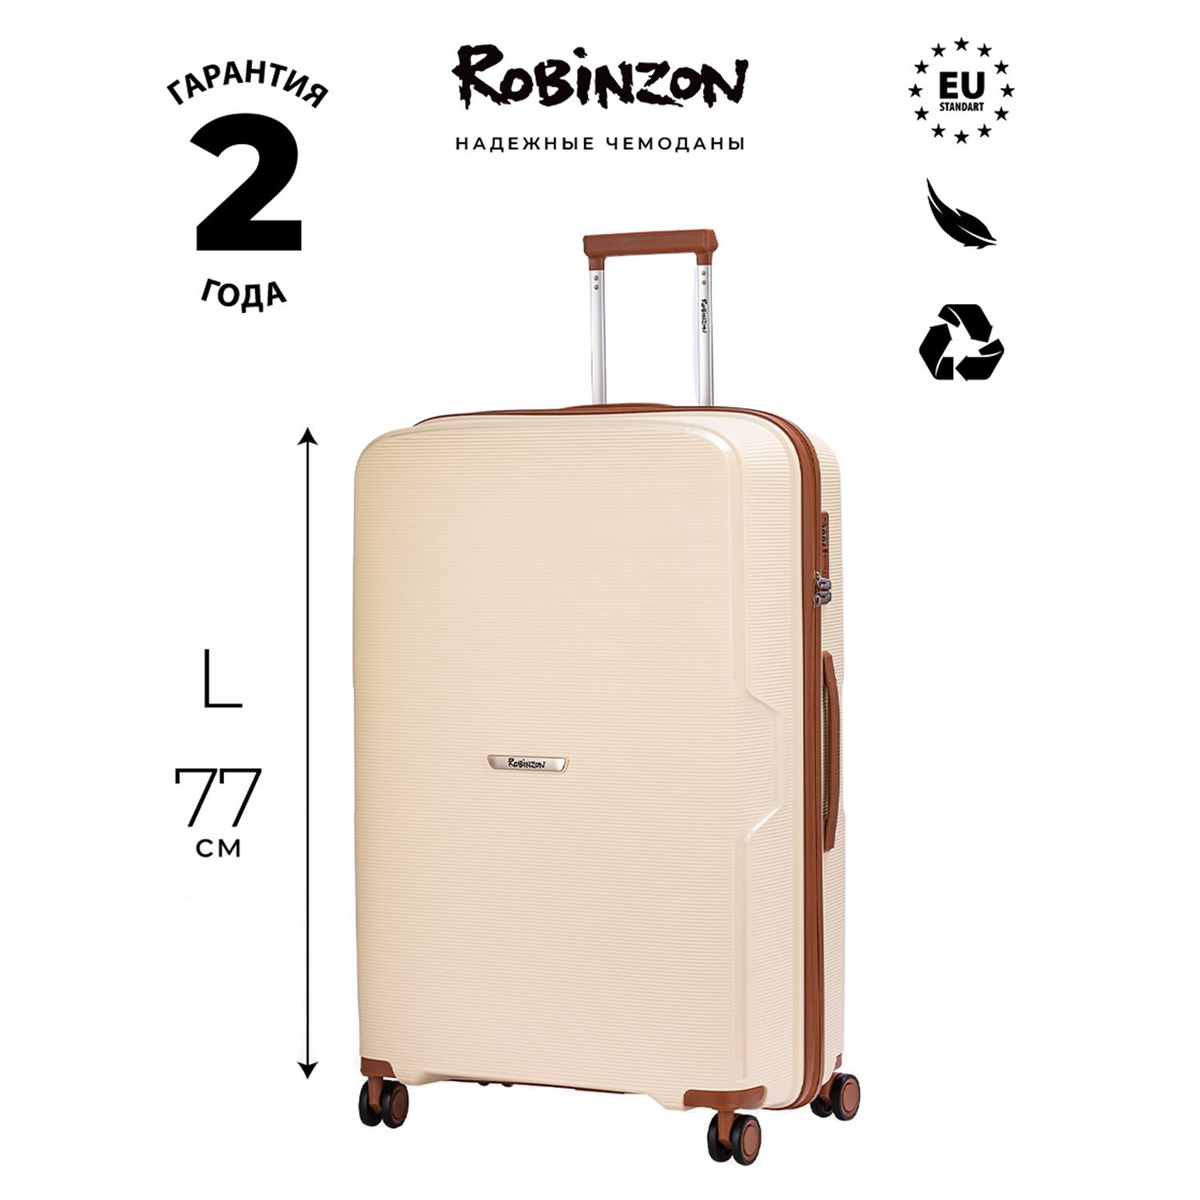 Размер чемодана: 52x77x29 см Вес чемодана: всего 3,7 кг Объём чемодана: 103 л